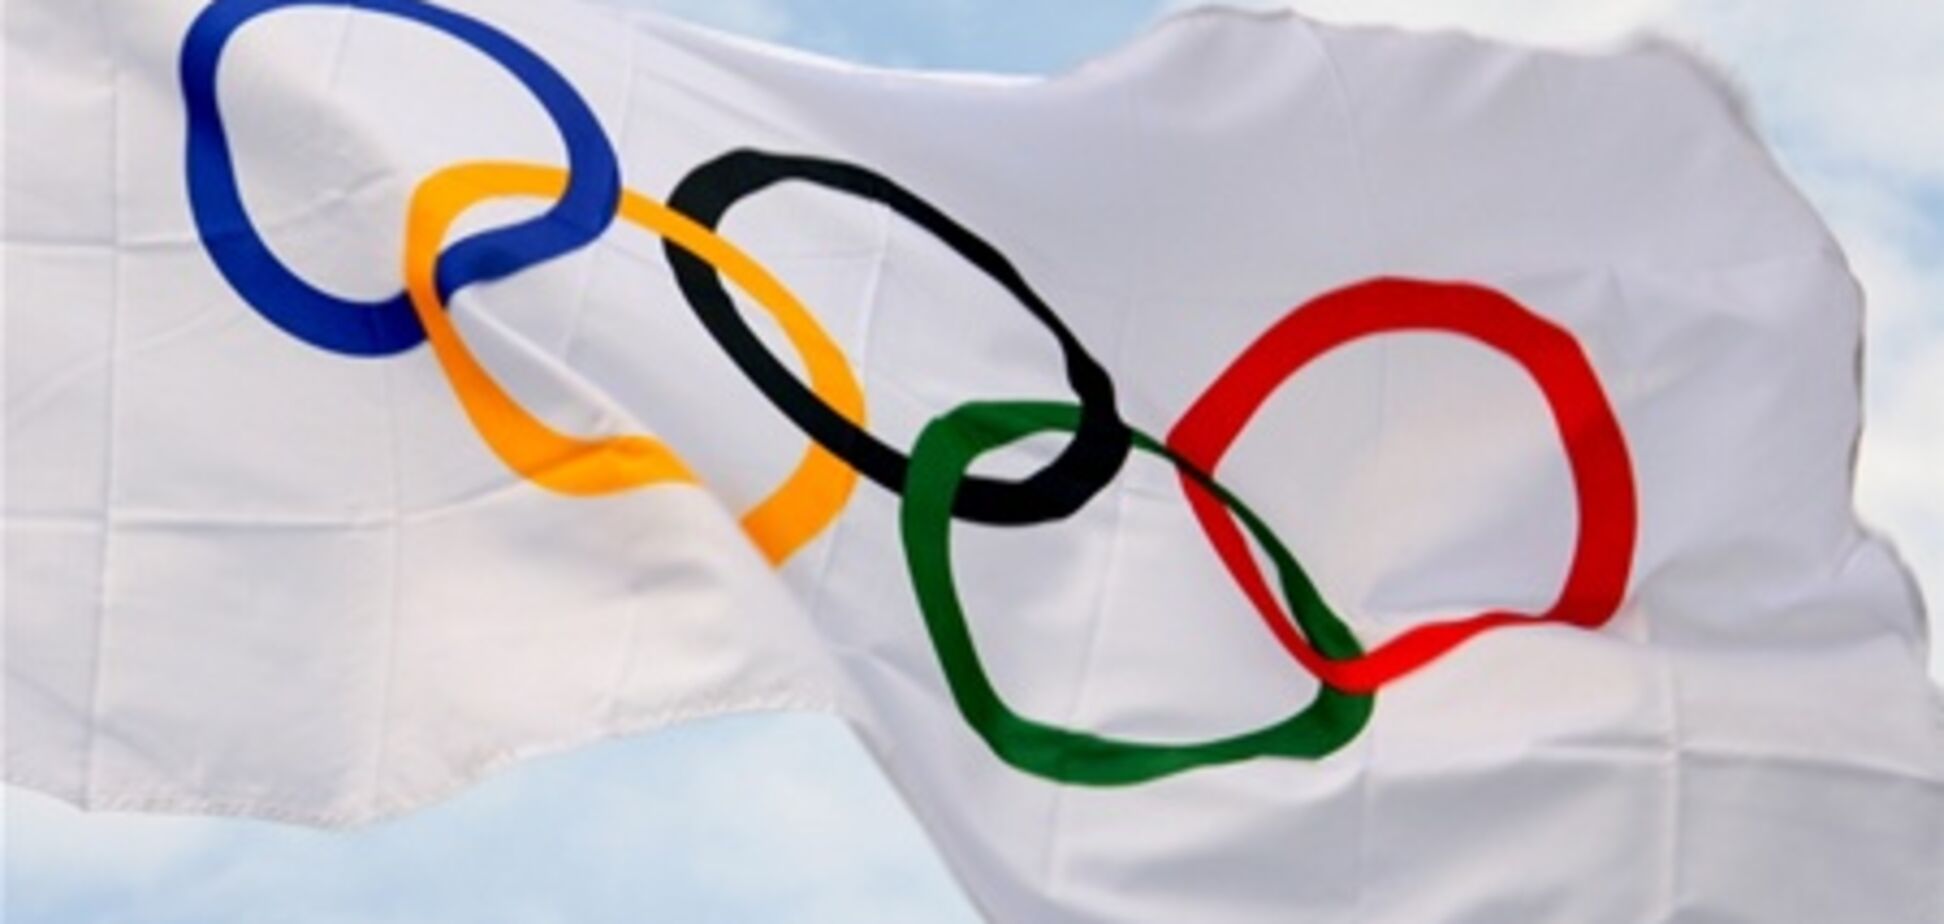 Азаров хочет построить новую олимпийскую базу